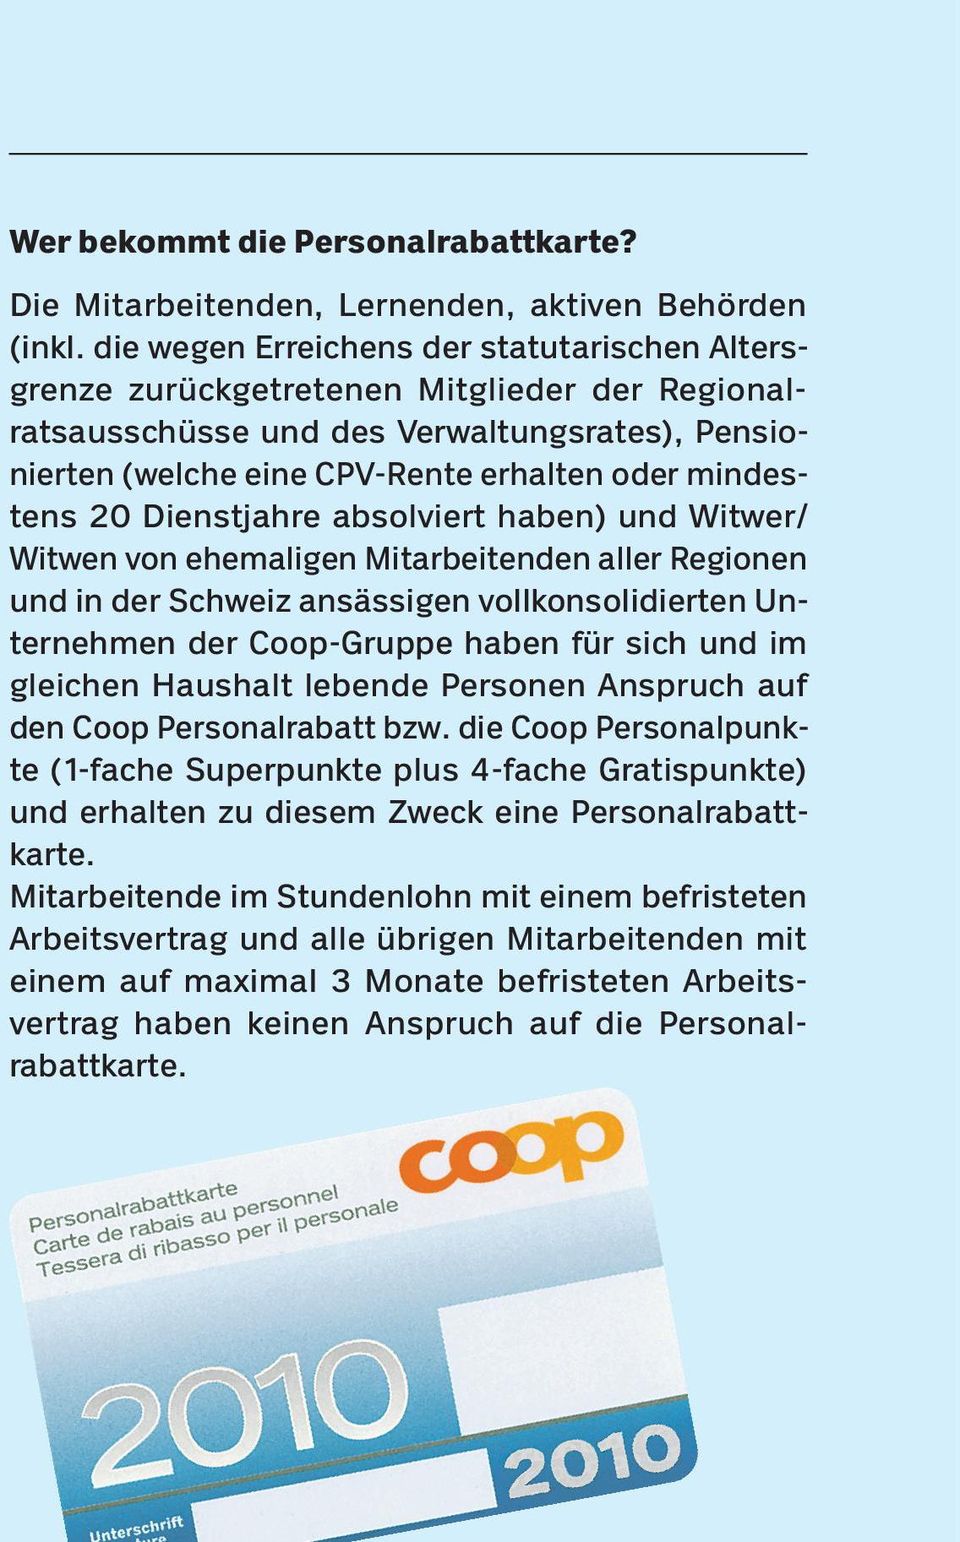 20 Dienstjahre absolviert haben) und Witwer/ Witwen von ehemaligen Mitarbeitenden aller Regionen und in der Schweiz ansässigen vollkonsolidierten Unternehmen der Coop-Gruppe haben für sich und im